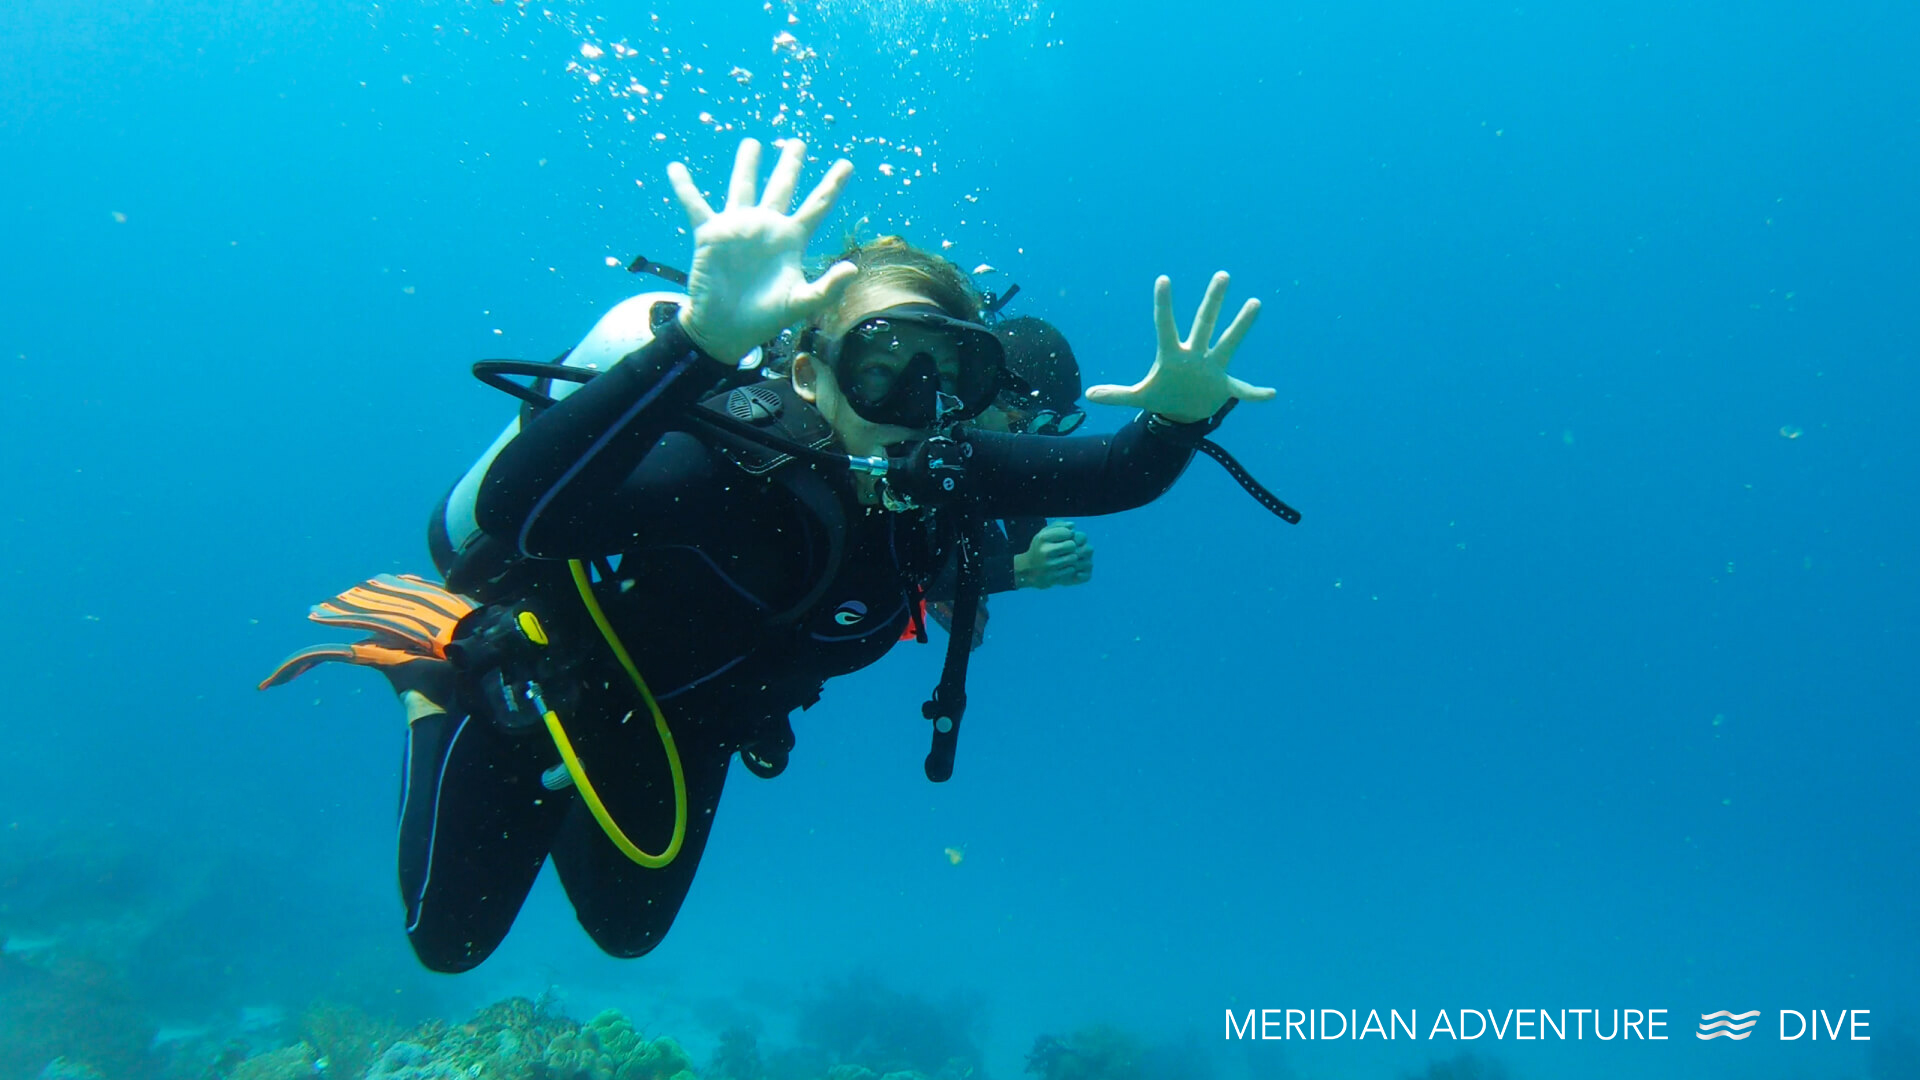 Raja Ampat diving with Meridian Adventure Dive.